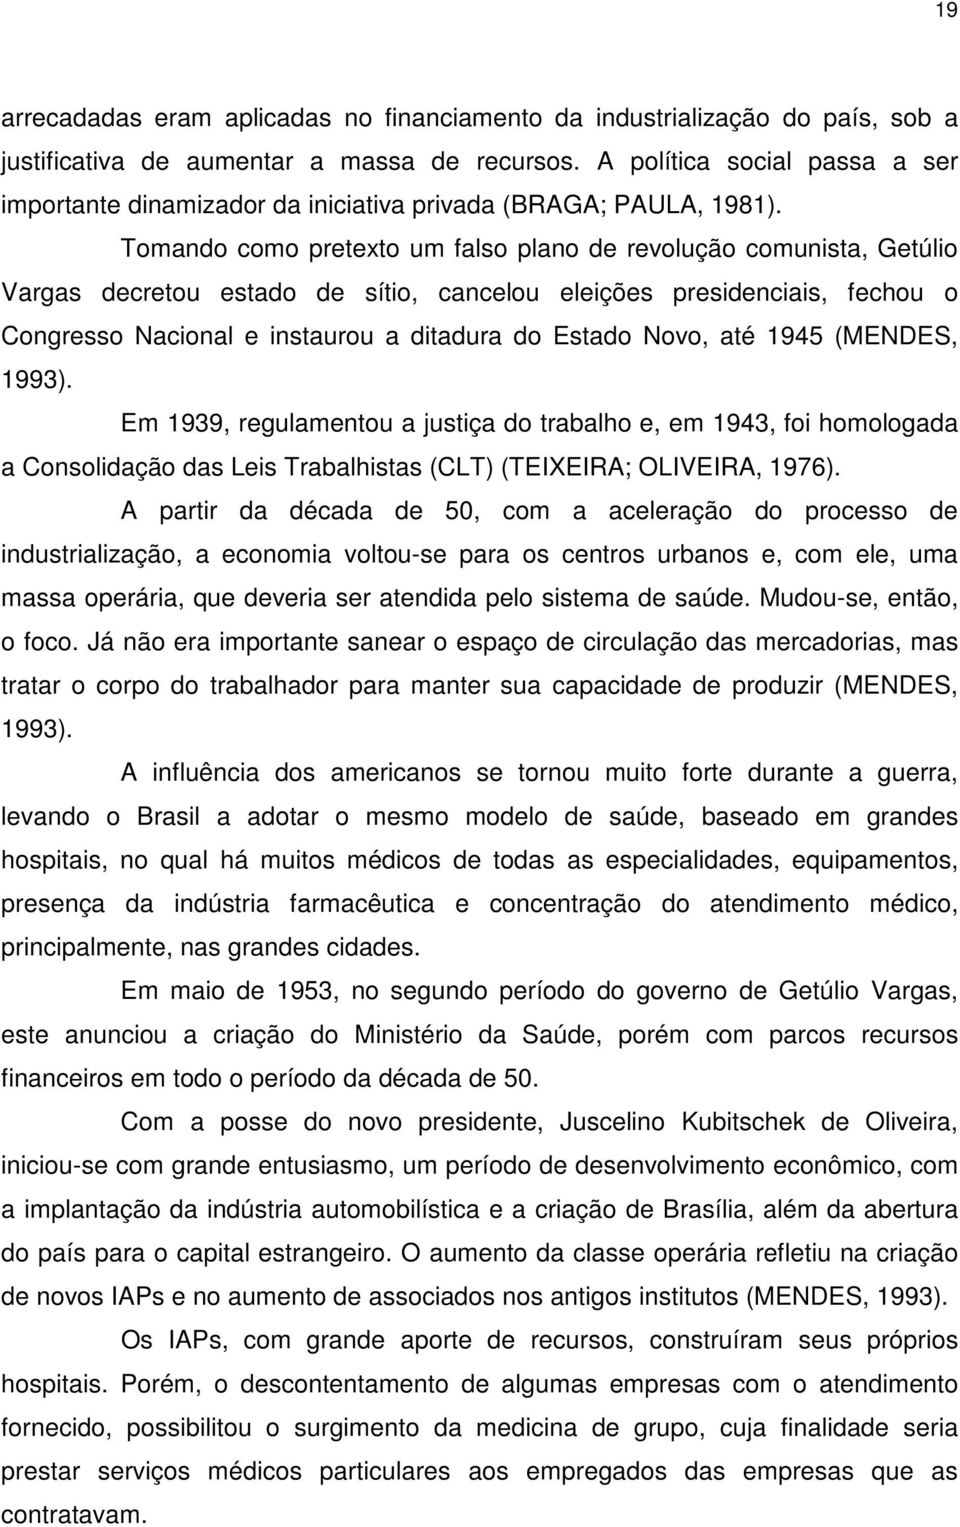 Tomando como pretexto um falso plano de revolução comunista, Getúlio Vargas decretou estado de sítio, cancelou eleições presidenciais, fechou o Congresso Nacional e instaurou a ditadura do Estado